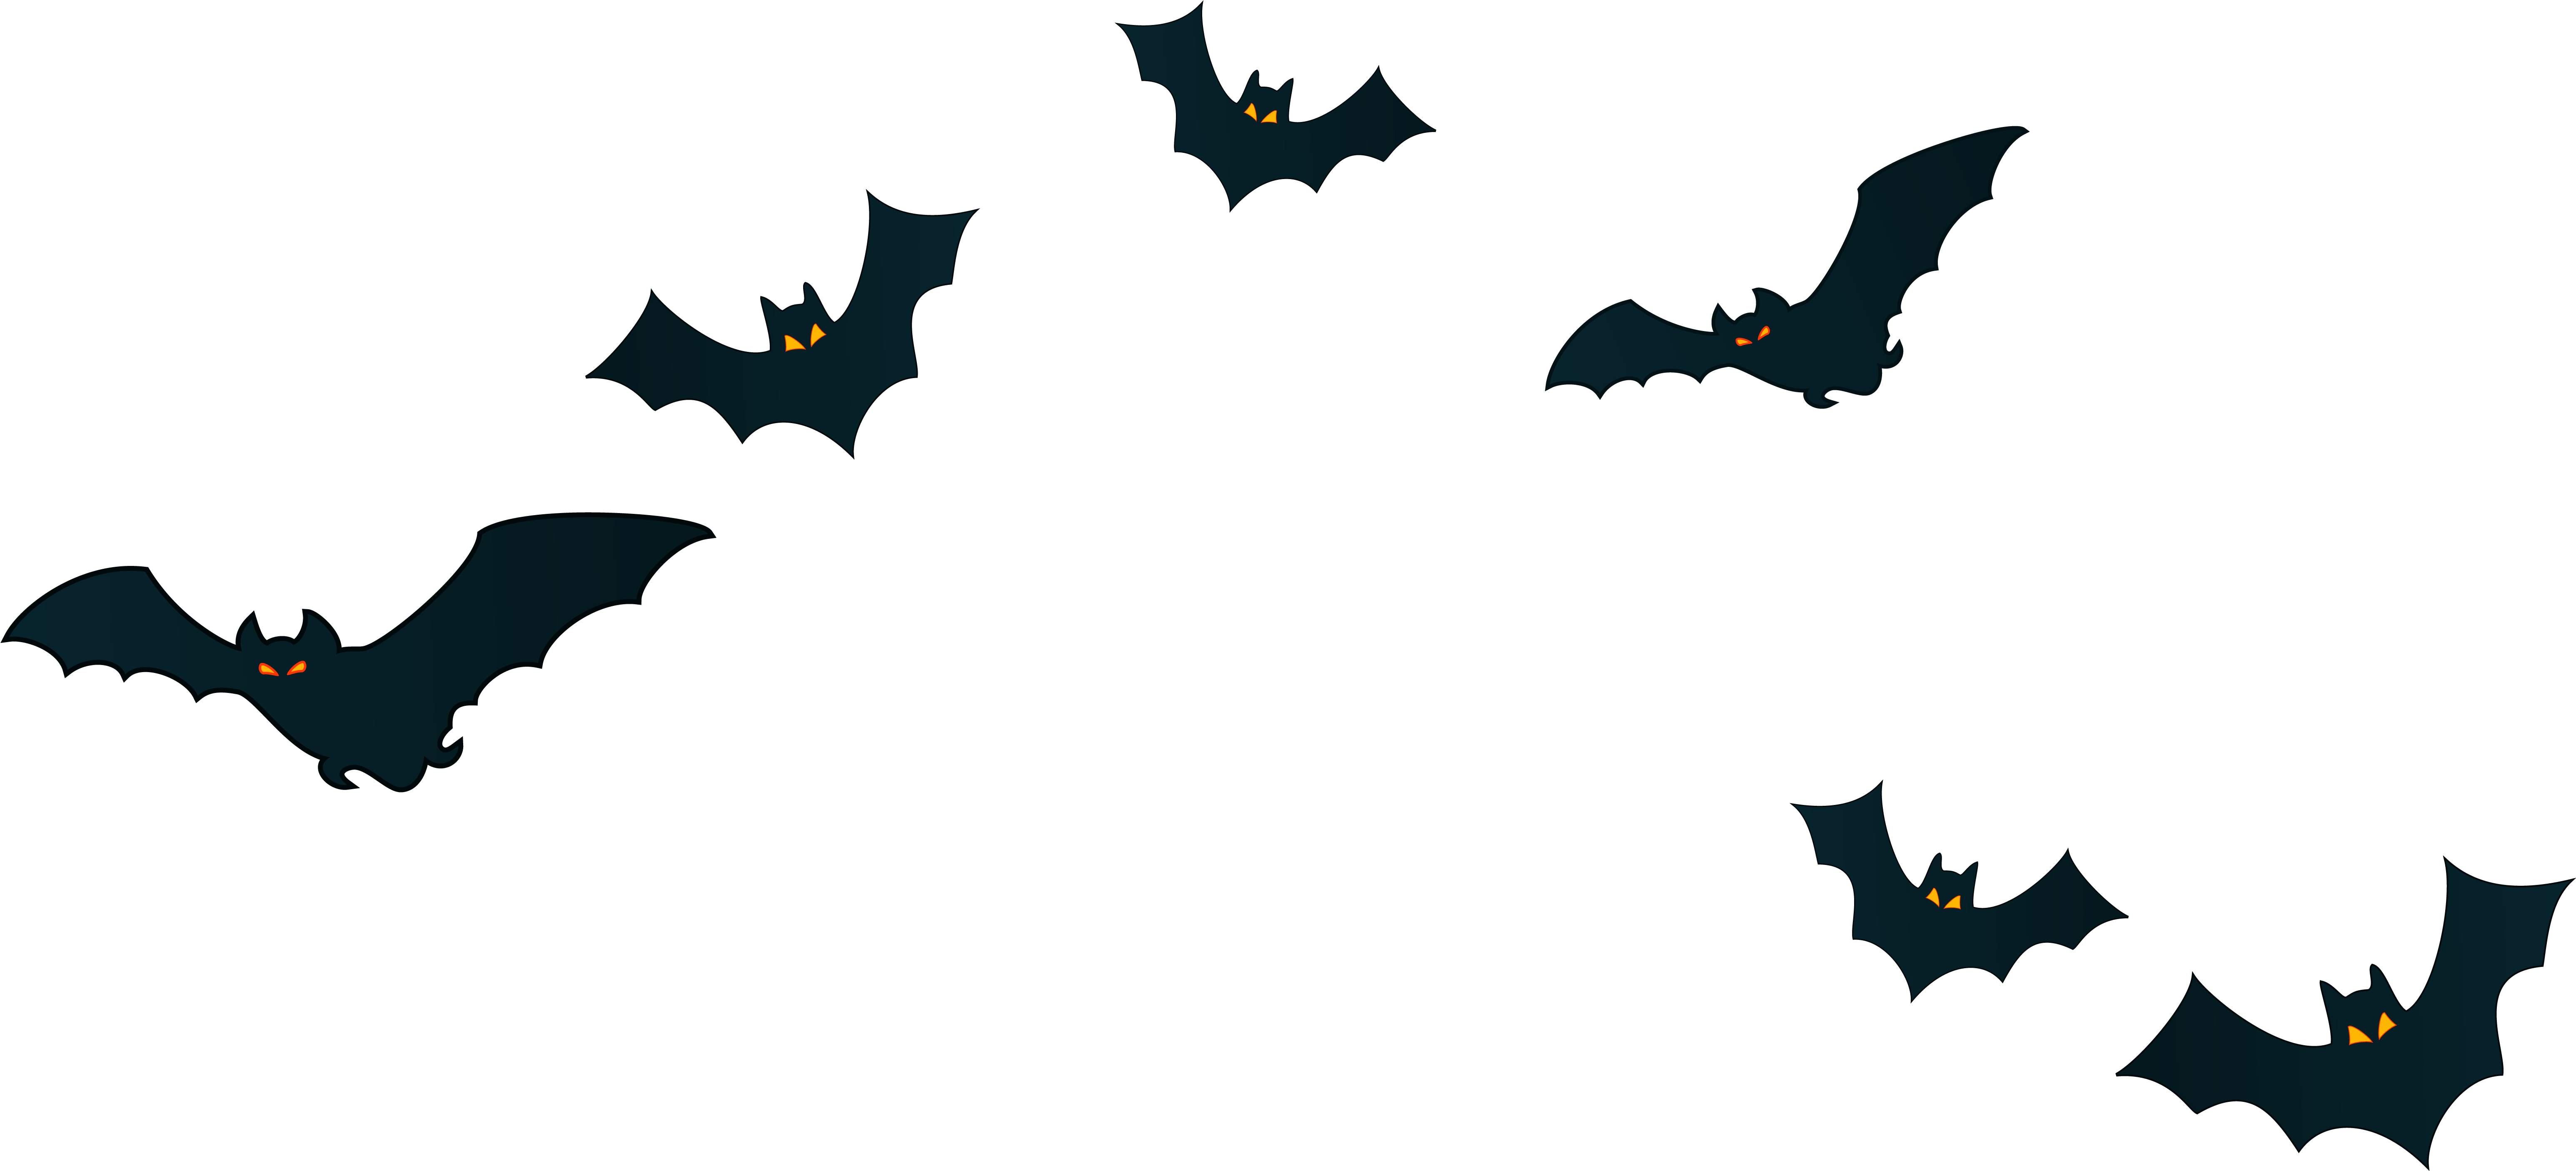 هالوين الخفافيش الأسود تحميل PNG صورة